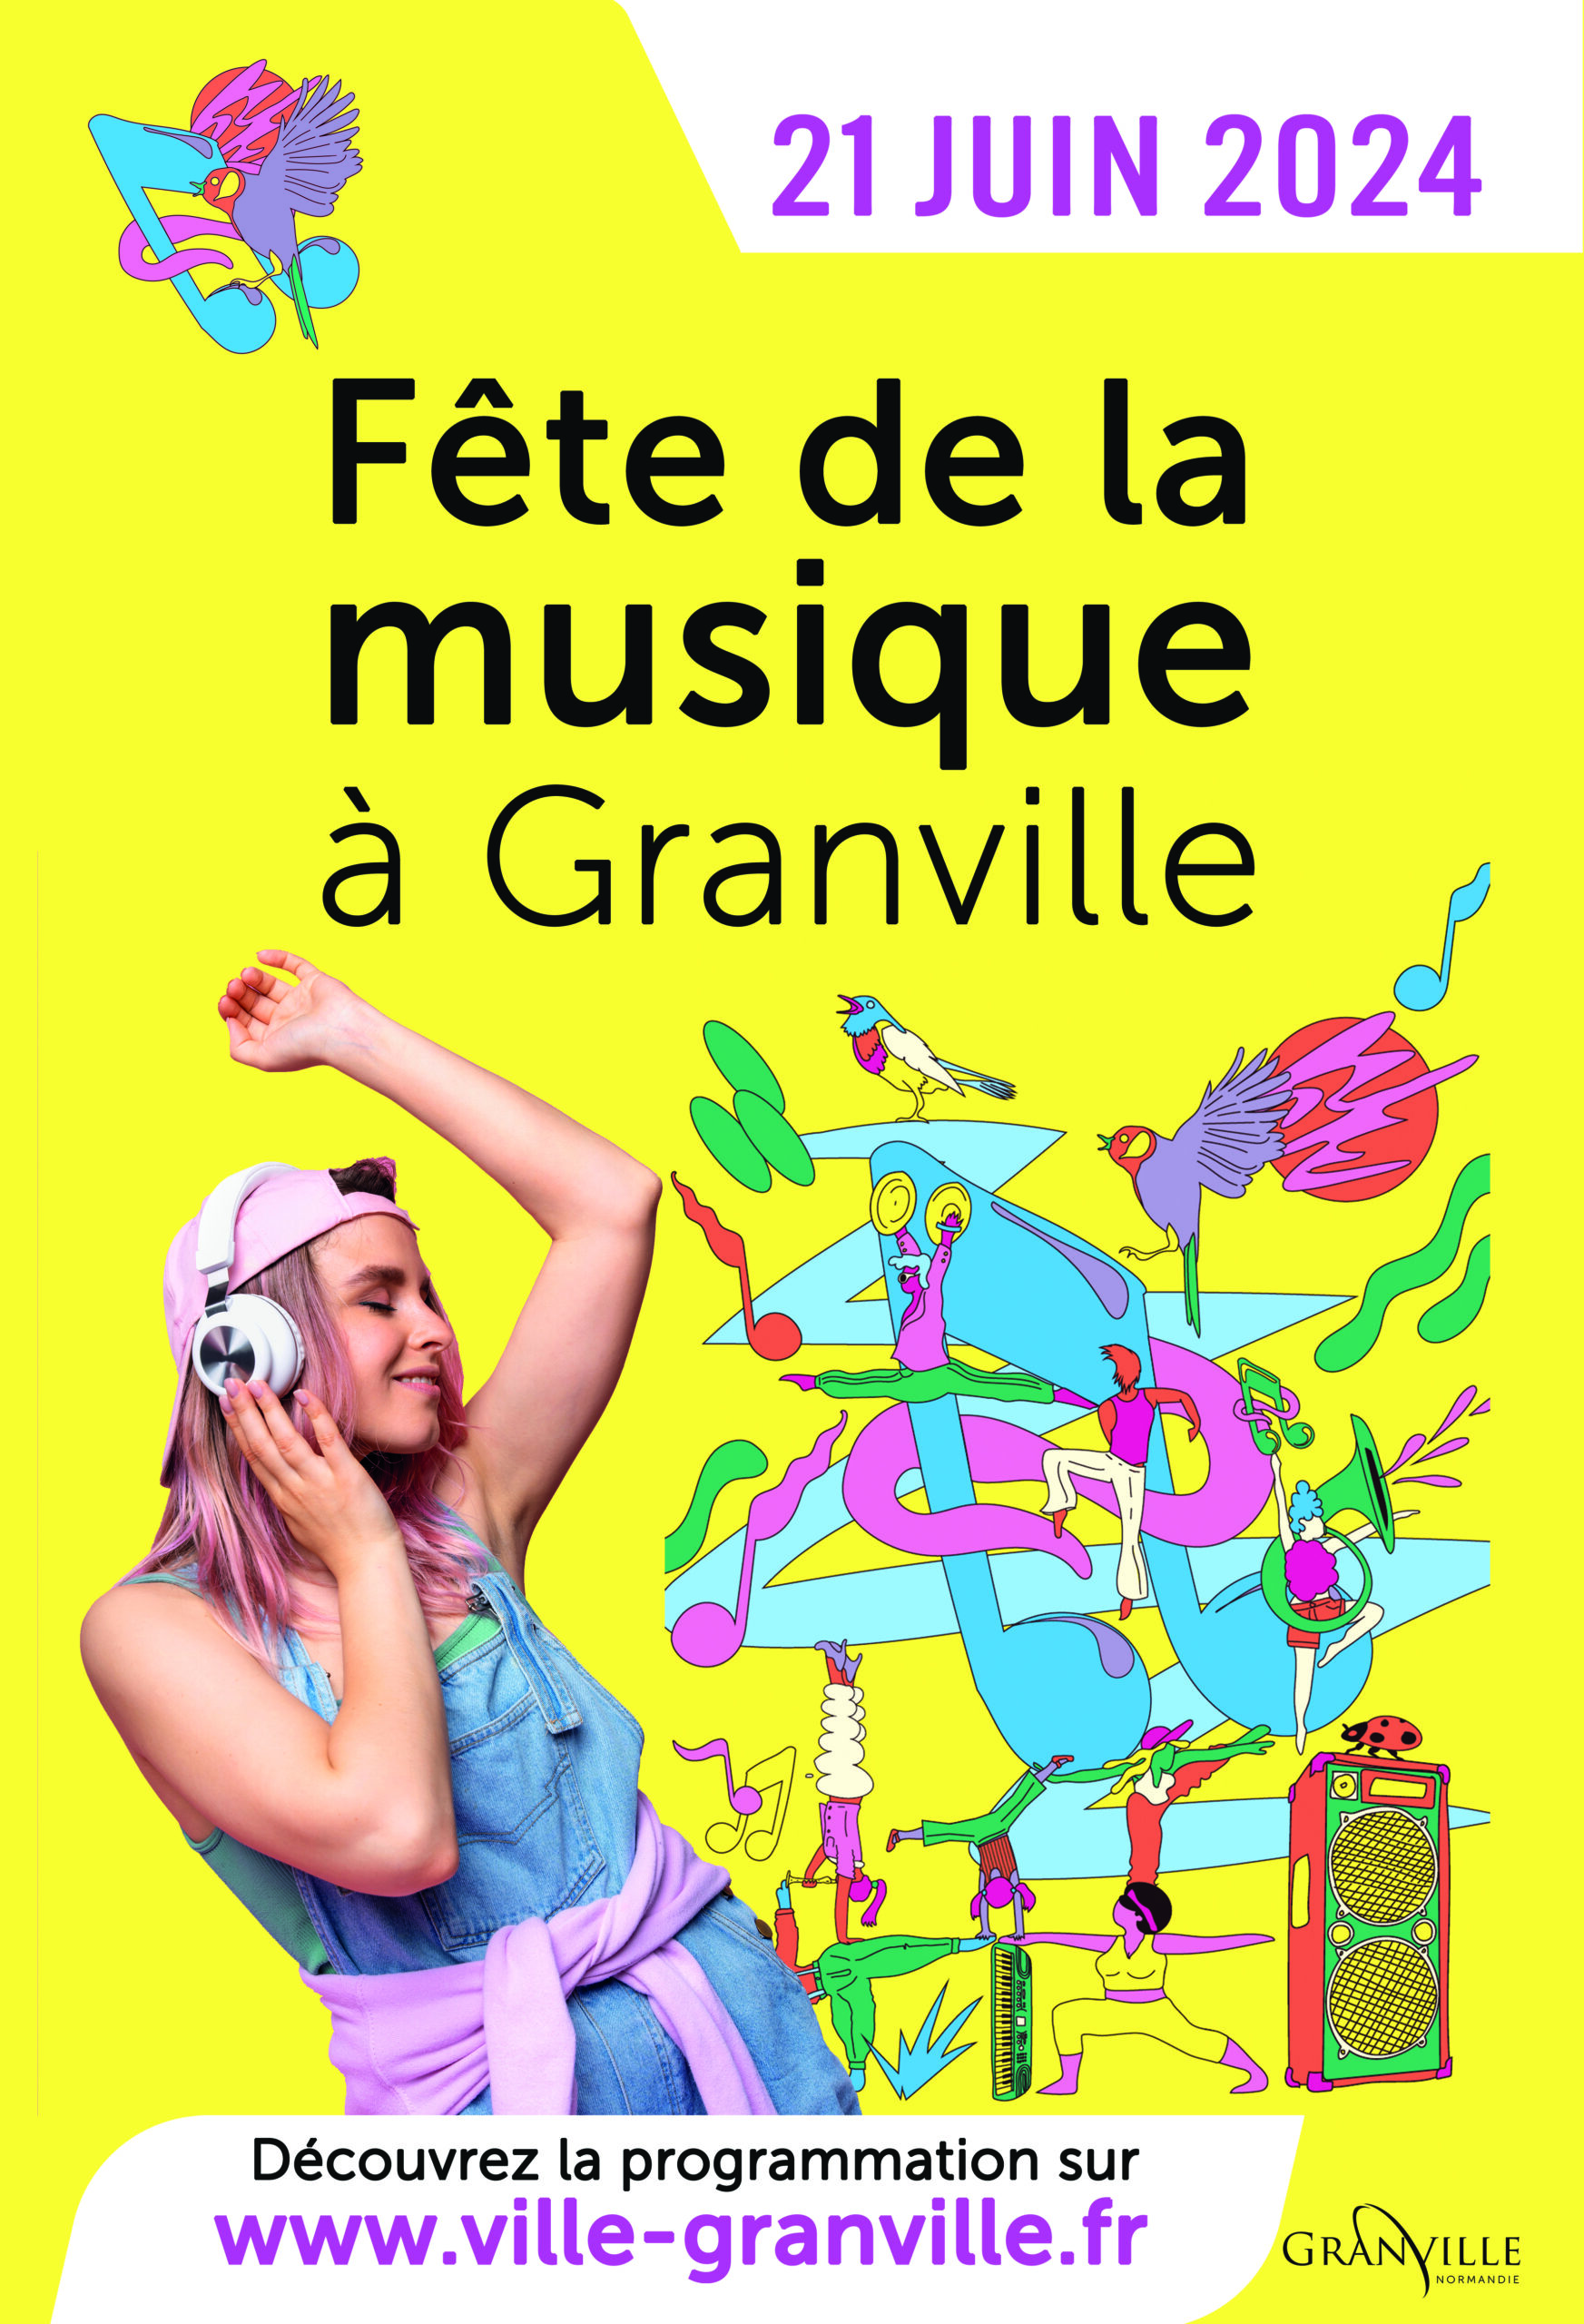 Granville fête la musique le 21 juin 2024 !